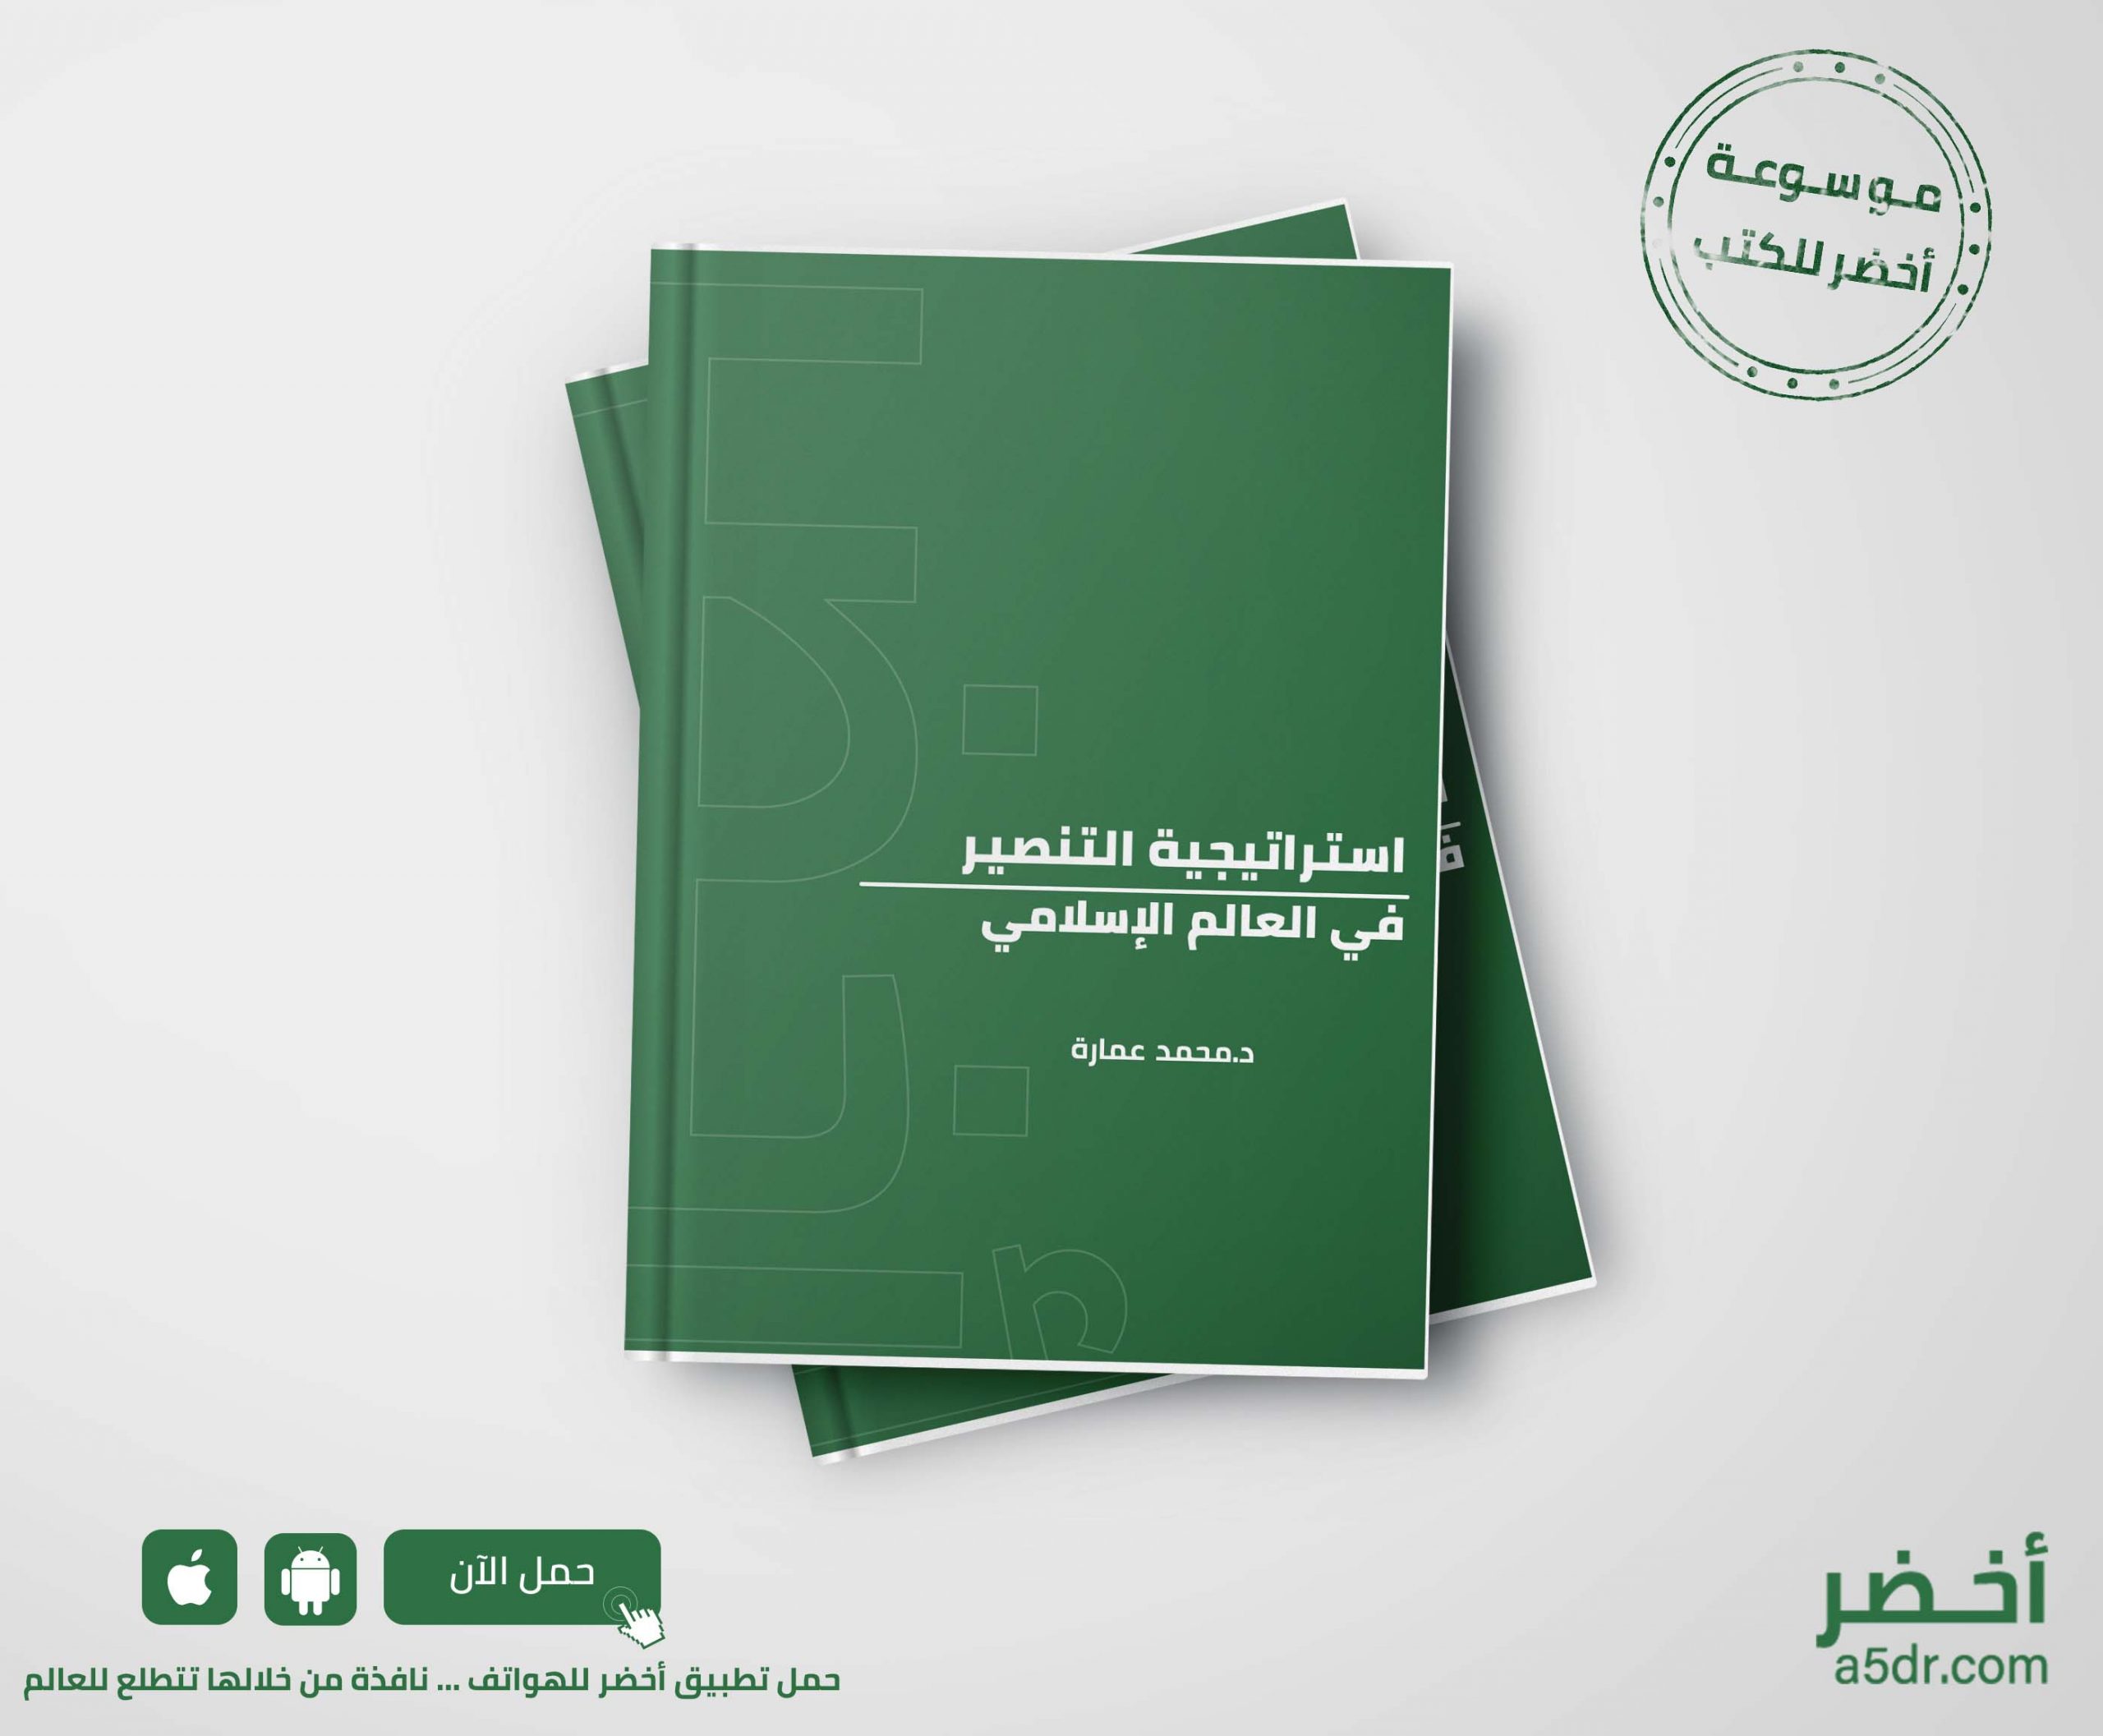 كتاب العالم الإسلامي والمتغيرات الدولية الراهنة محمد عمارة موسوعة أخضر للكتب